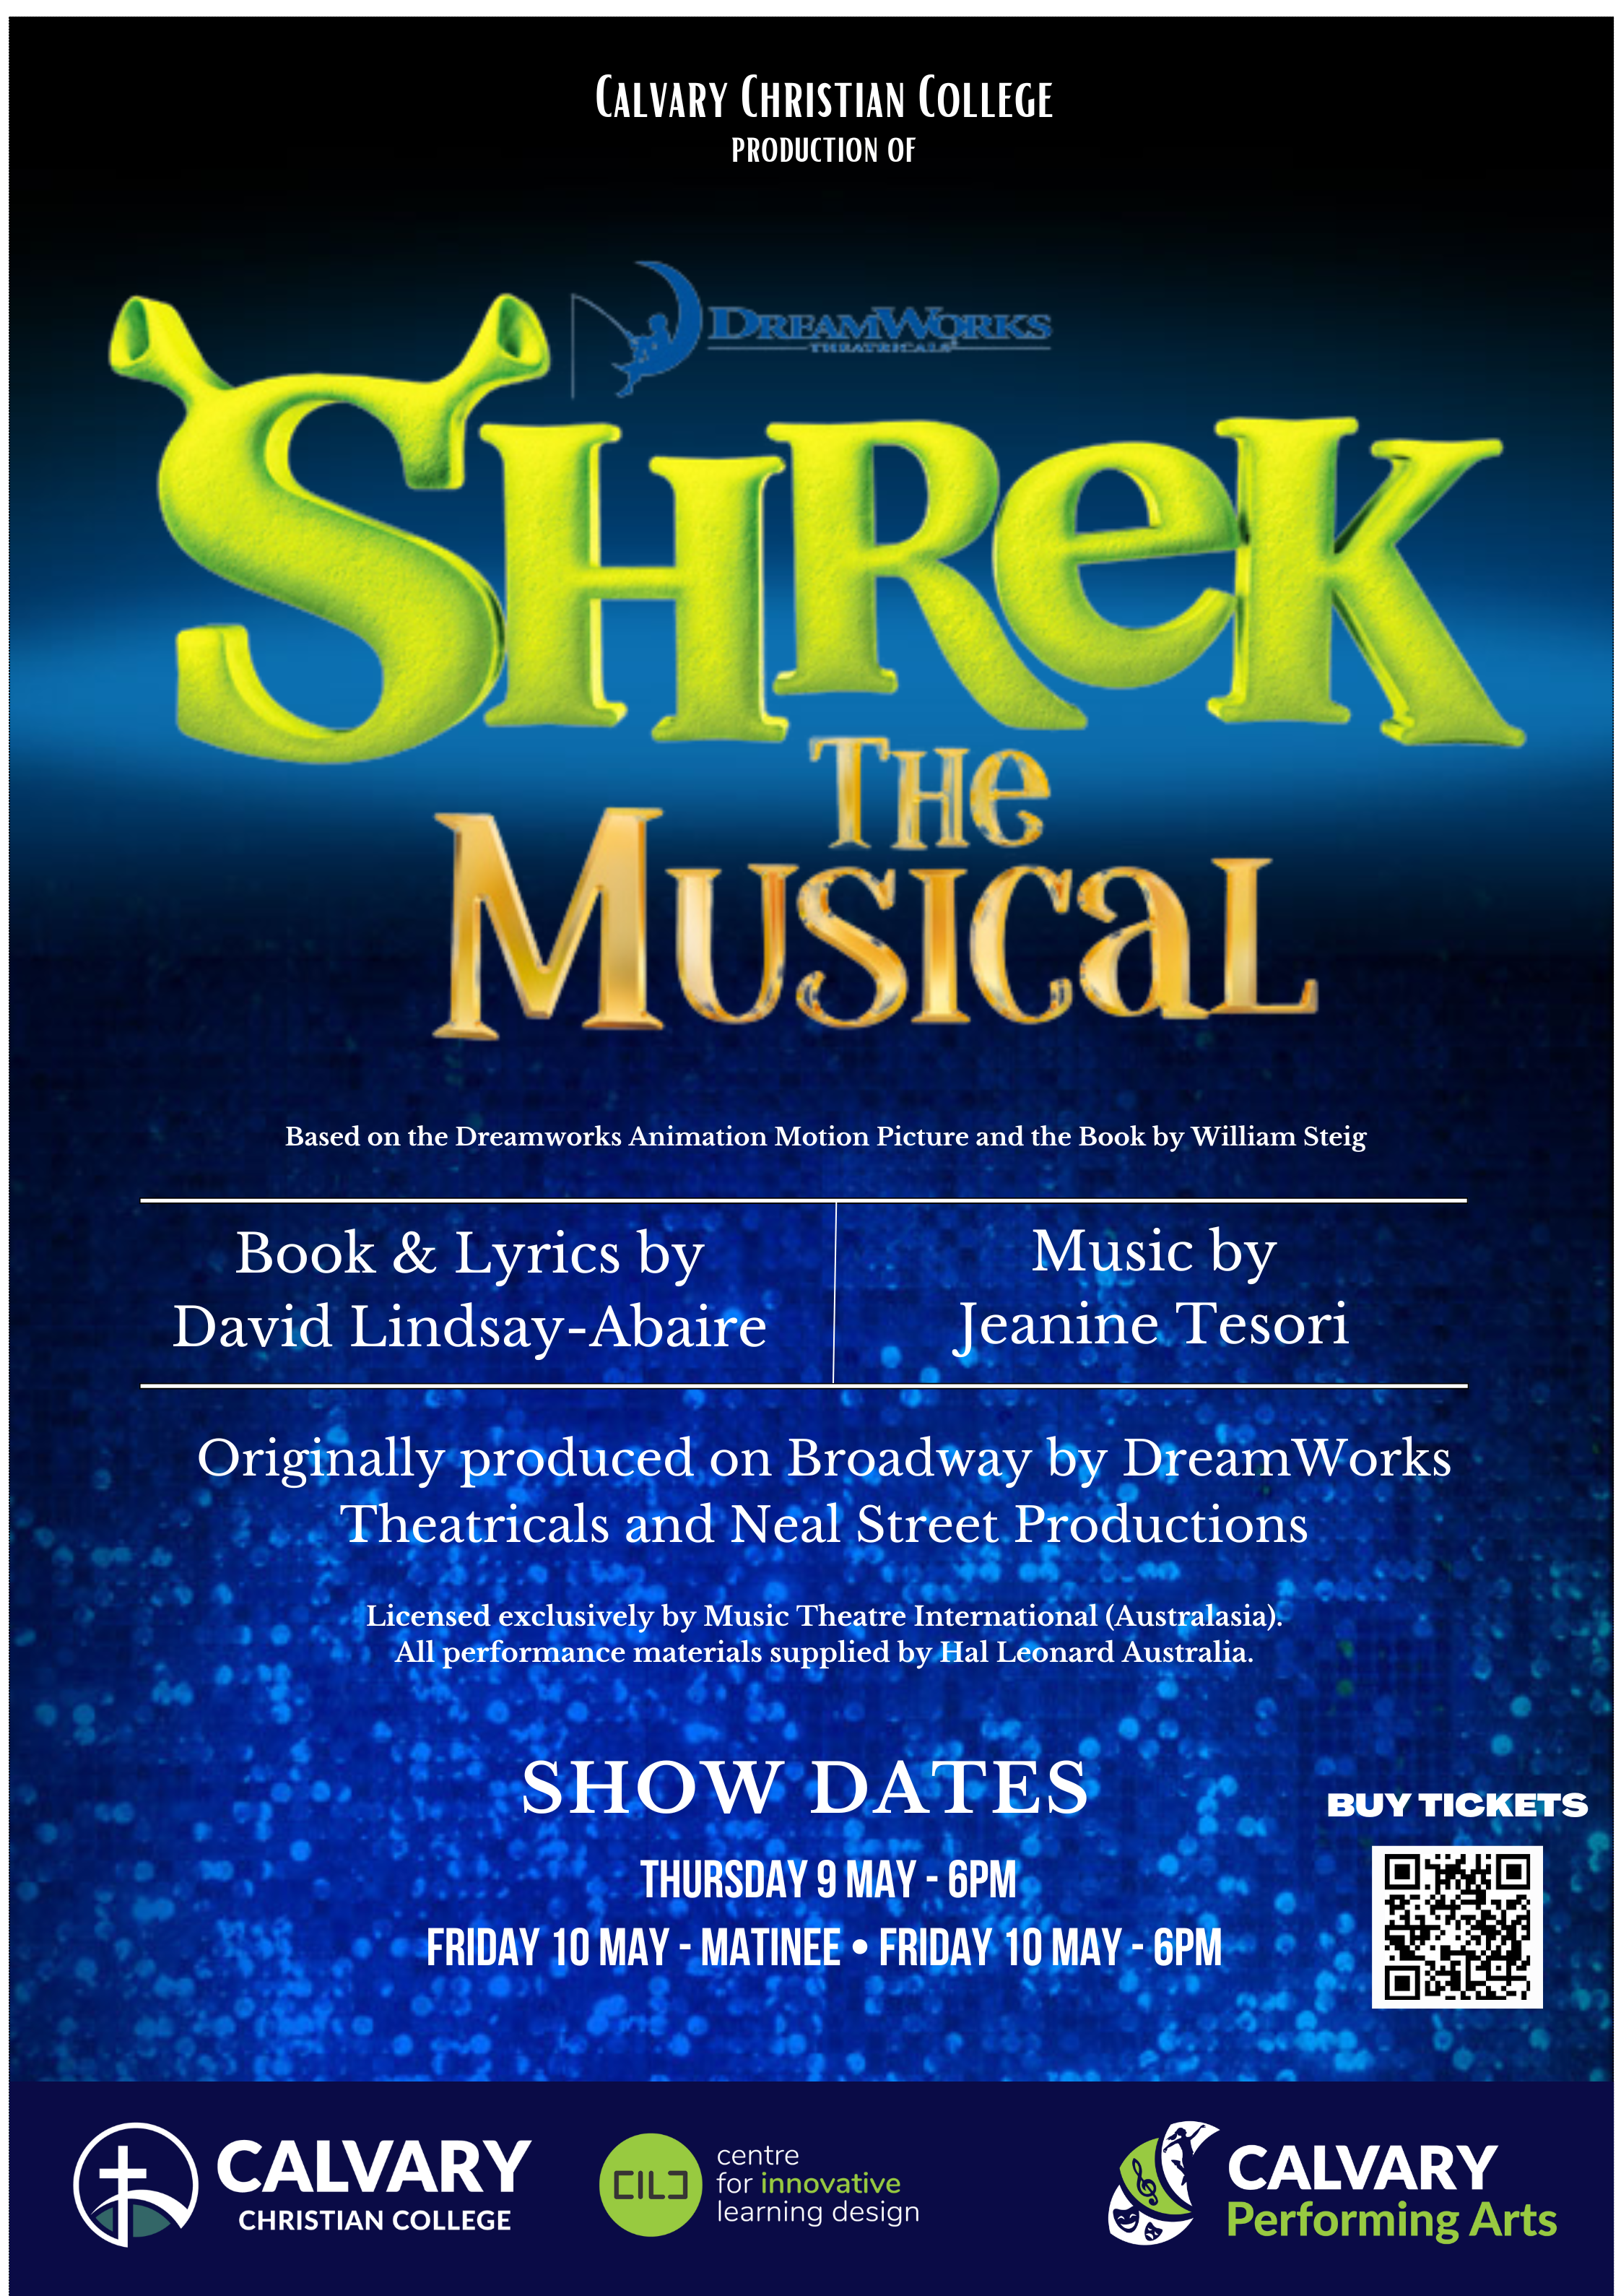 A1 Shrek Poster